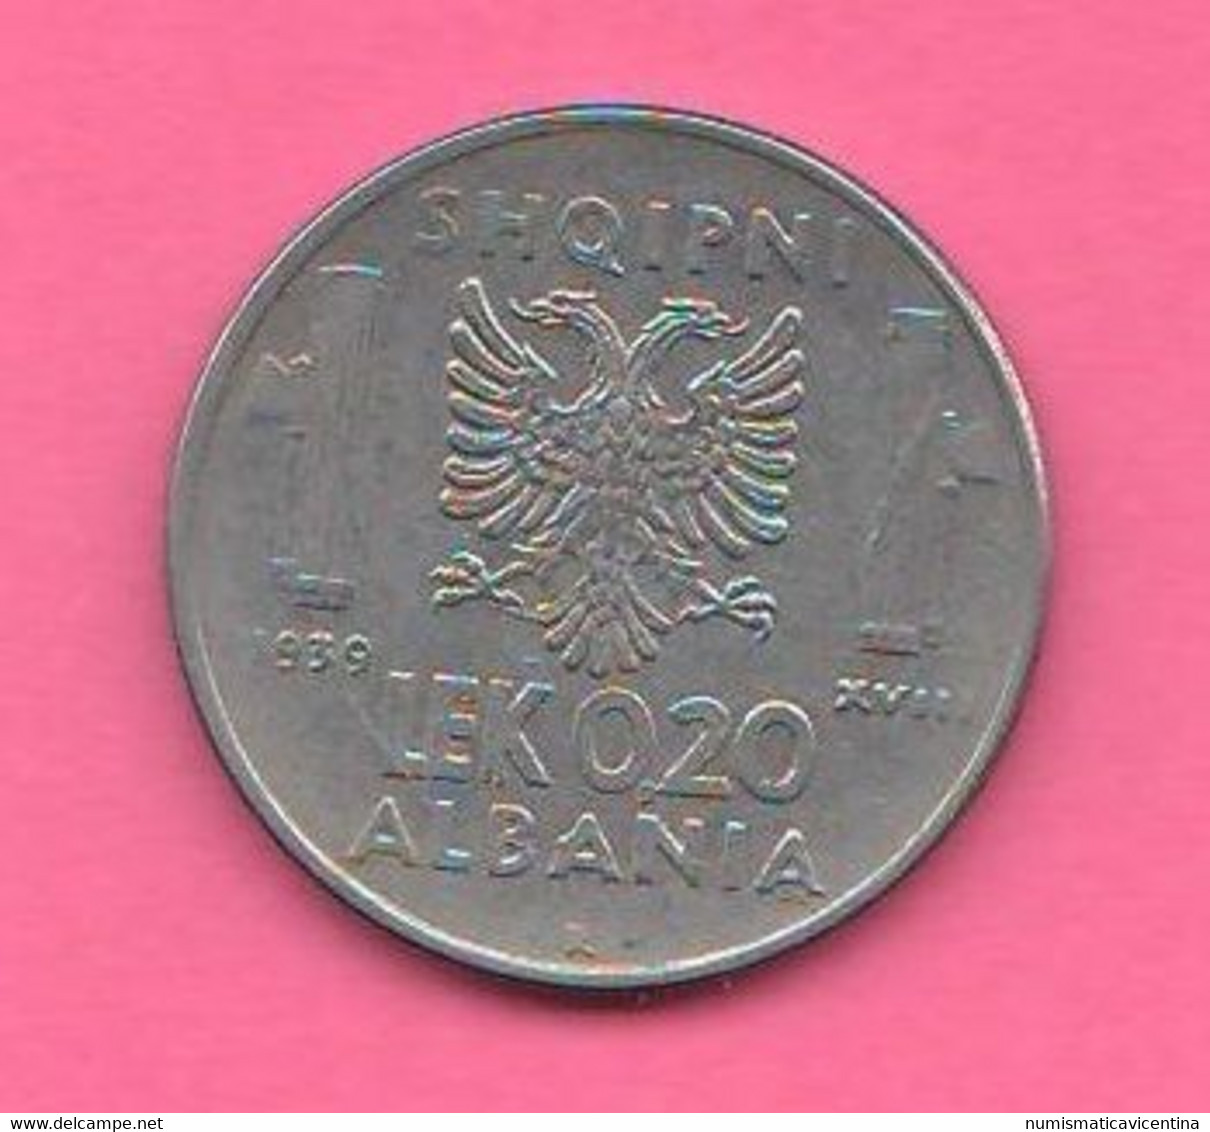 Albania 0,20 Lek 1939  King Vittorio Emanuele II° Albanie Shqipni Steel Magnetic Coin - Albanie